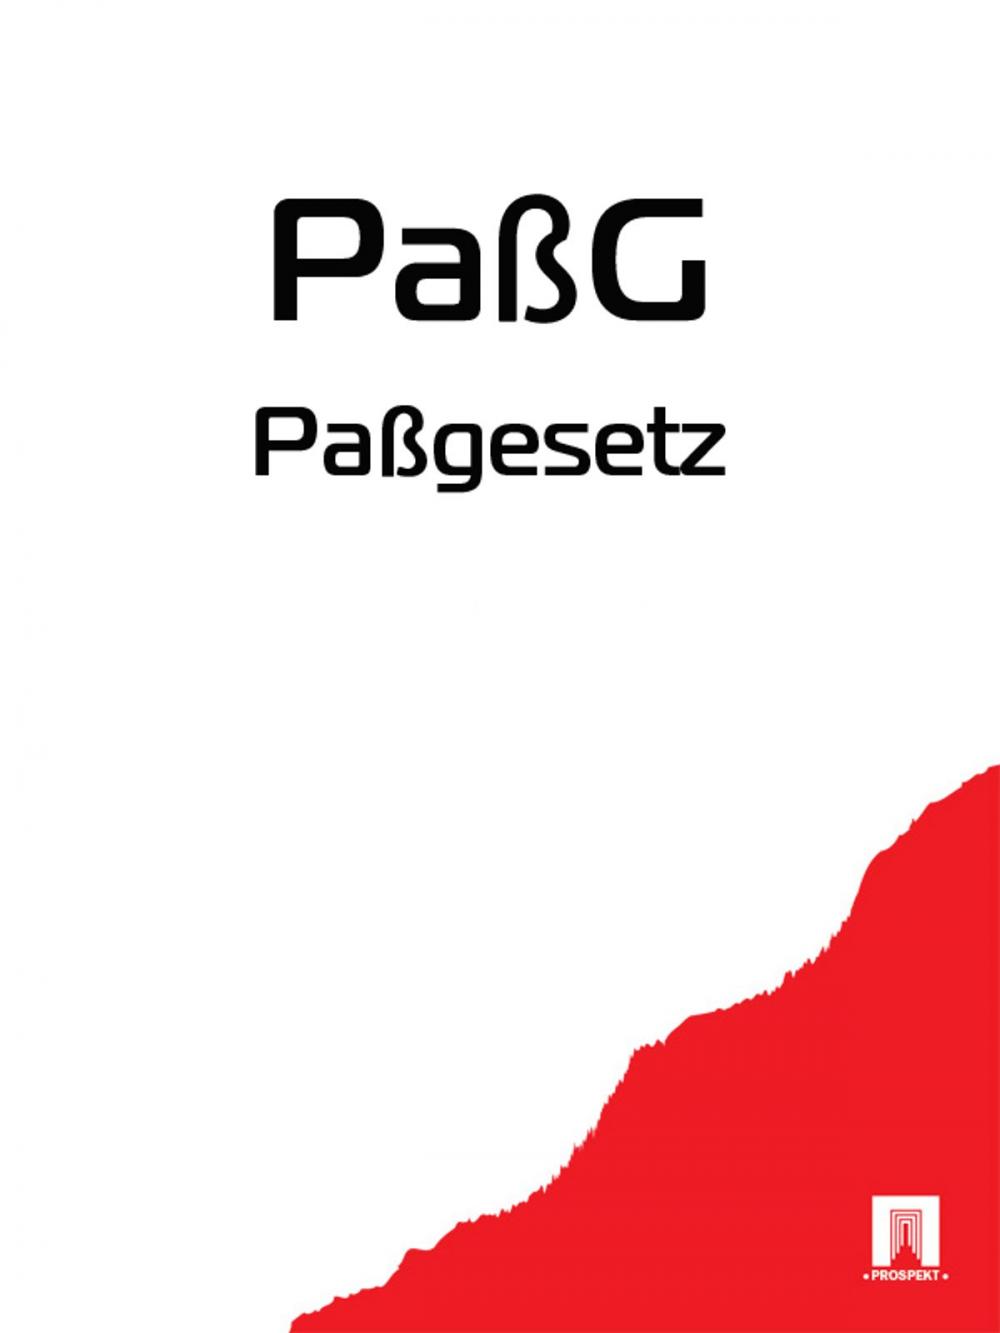 Big bigCover of Passgesetz - PaßG